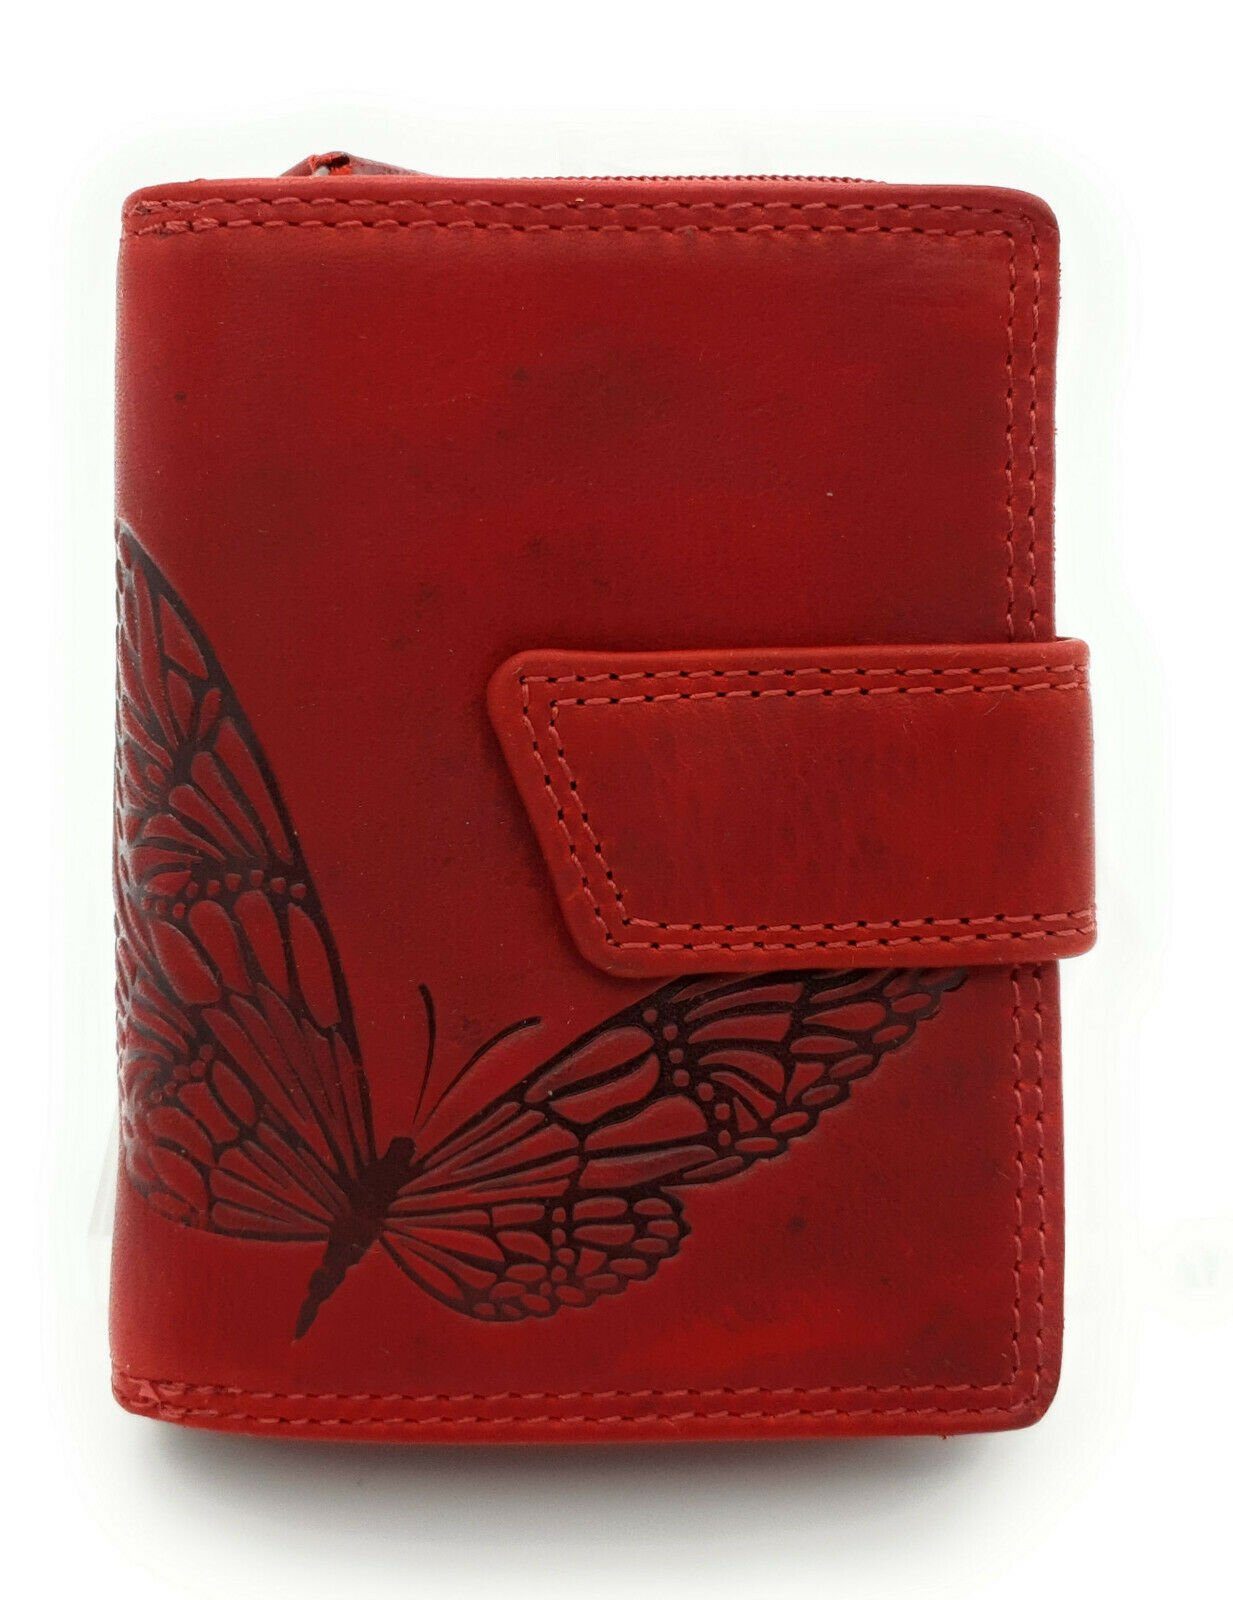 JOCKEY CLUB Mini Geldbörse kleines echt Leder Damen Portemonnaie mit RFID Schutz, wunderschöner Schmetterling, Sauvage Rindleder